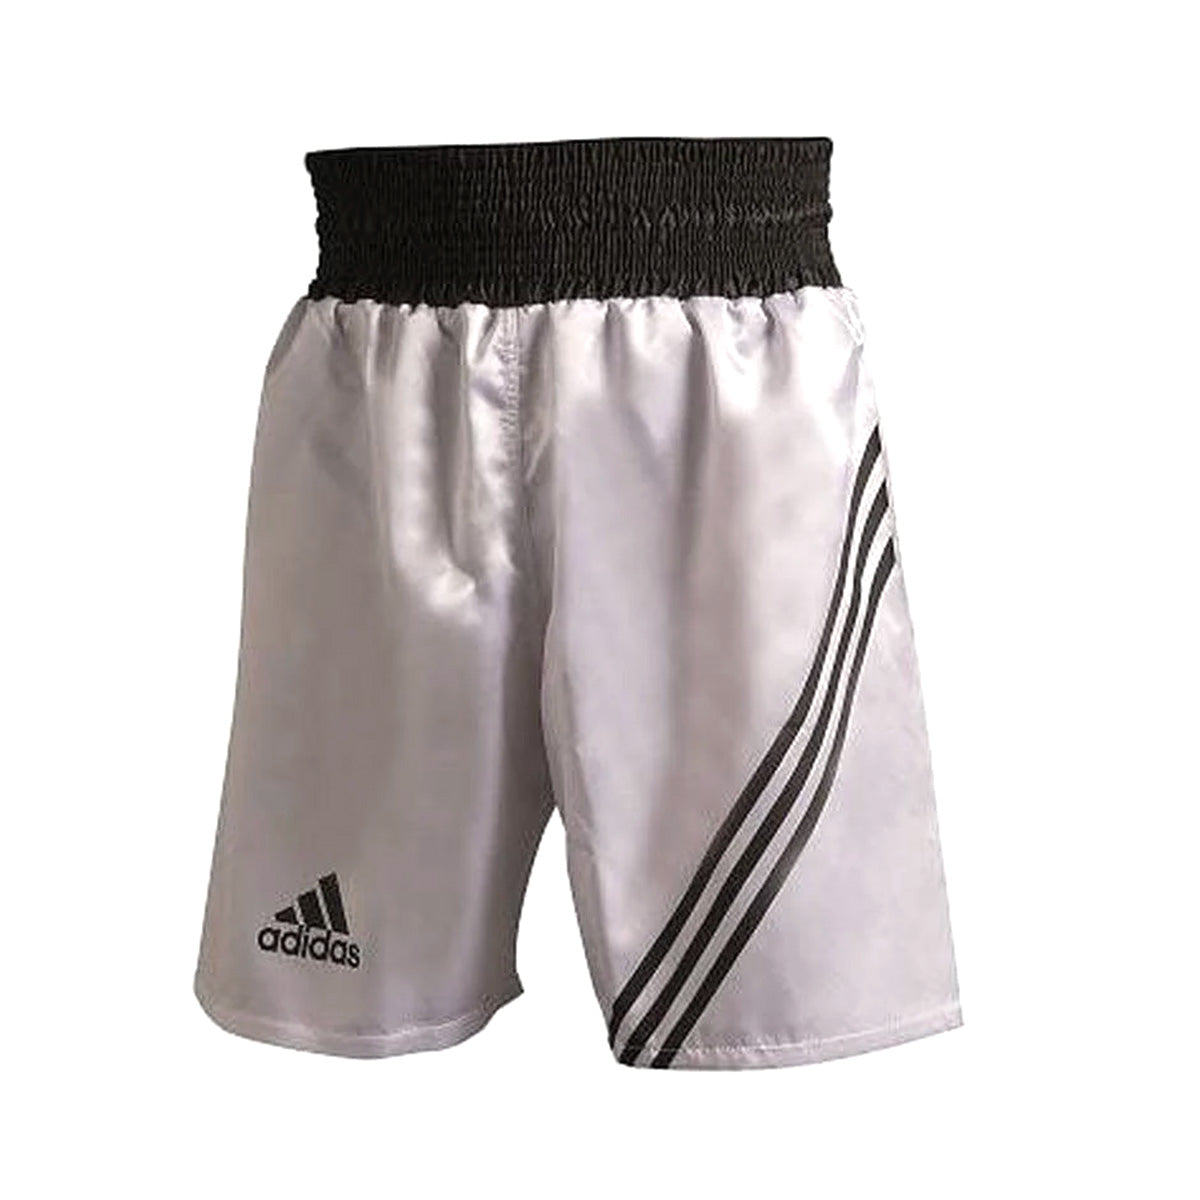 Adidas Multi-Wear Boxing Shorts-Adidas®-XL-Canada Fighting